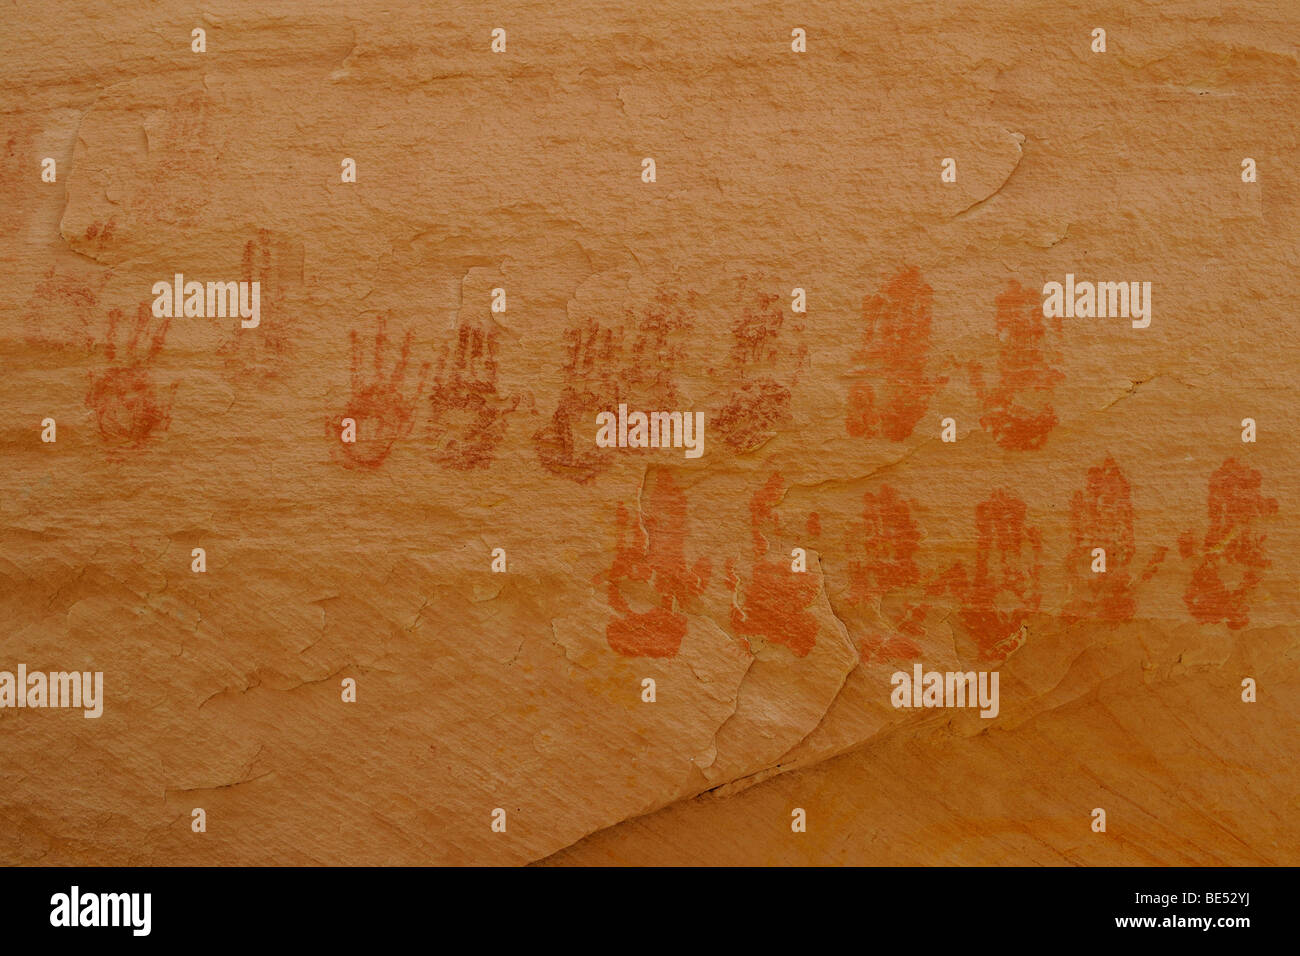 Piktogramme, druckt Hand 9 Anasazi-Indianer, etwa 900 Jahre alt, Cold Springs Höhle in der Nähe von Bluff, Utah, USA Stockfoto